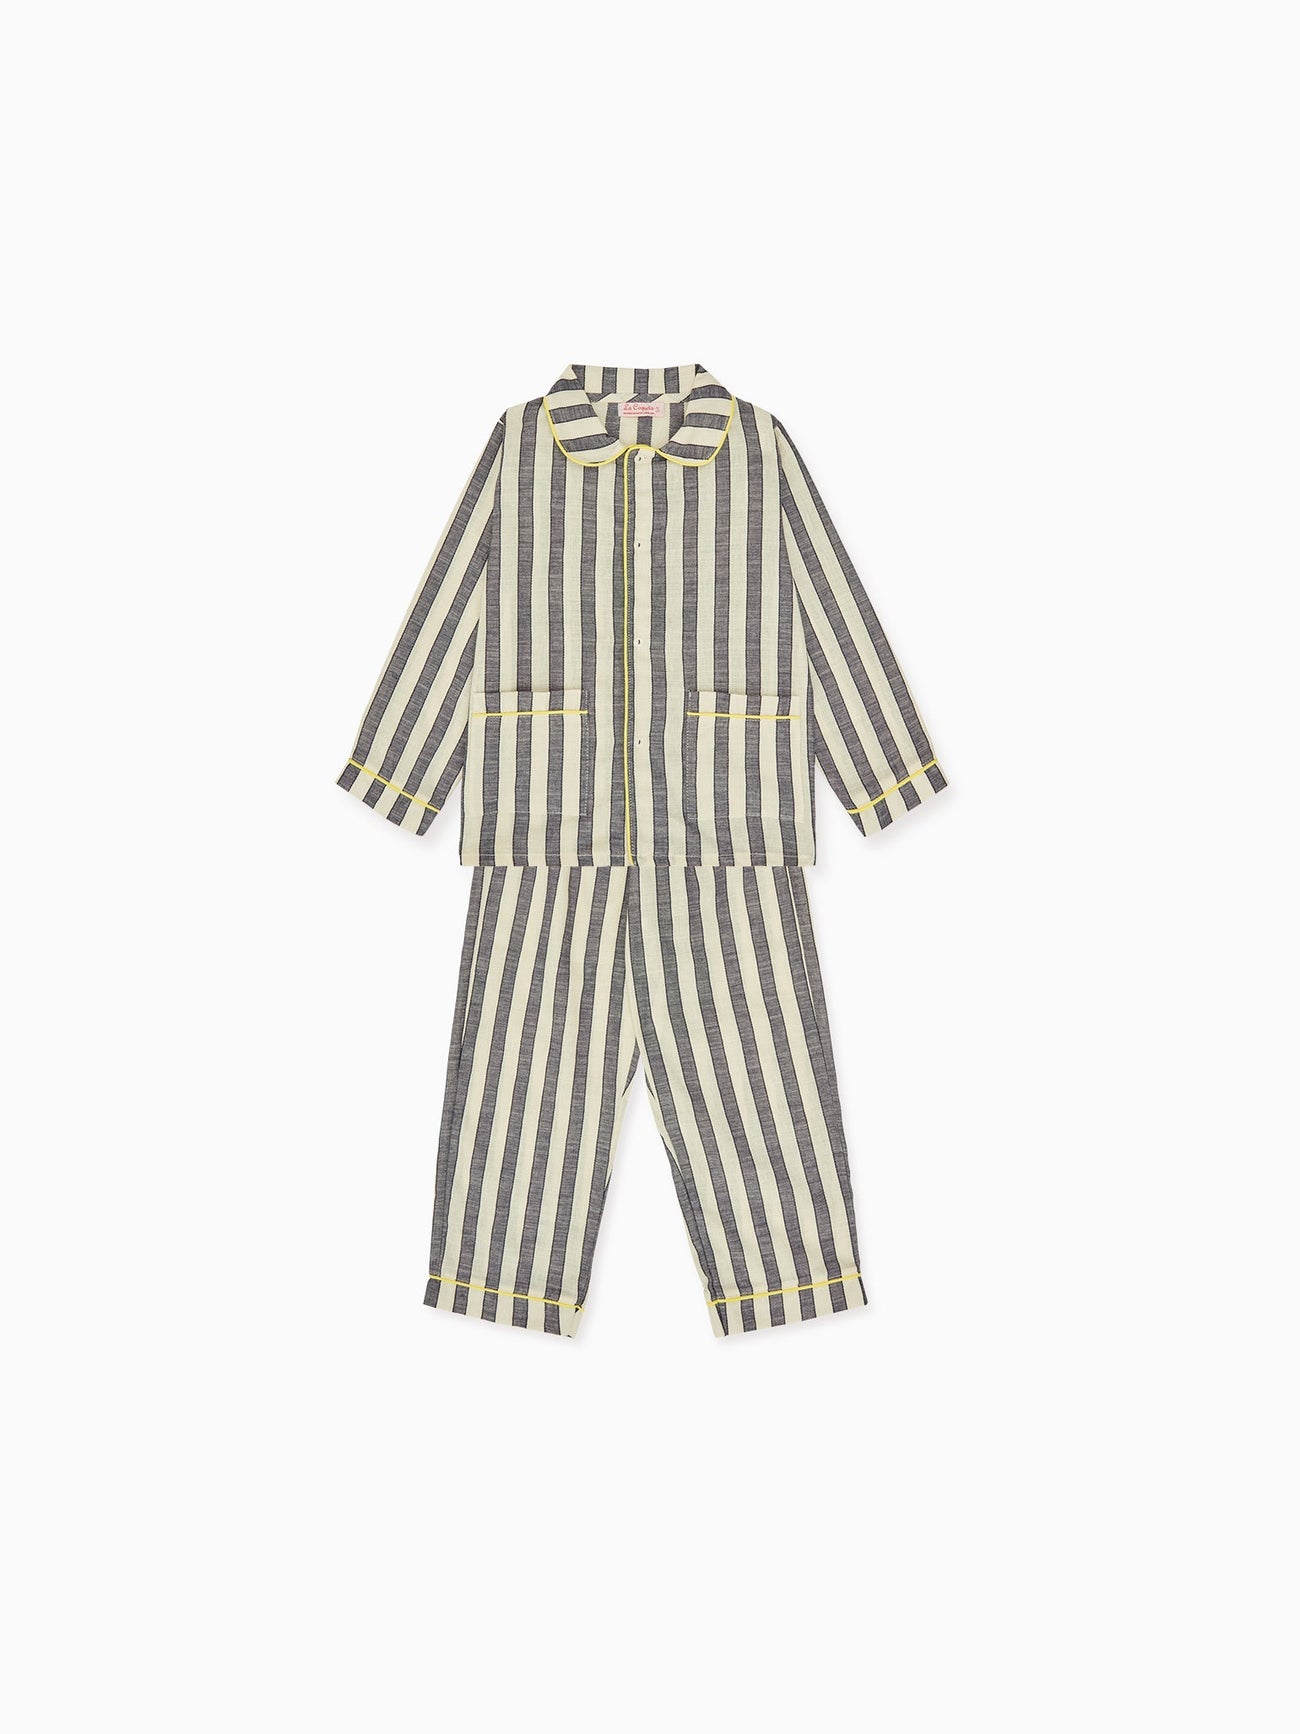 Blue Stripe Romera Kids Cotton Pyjamas